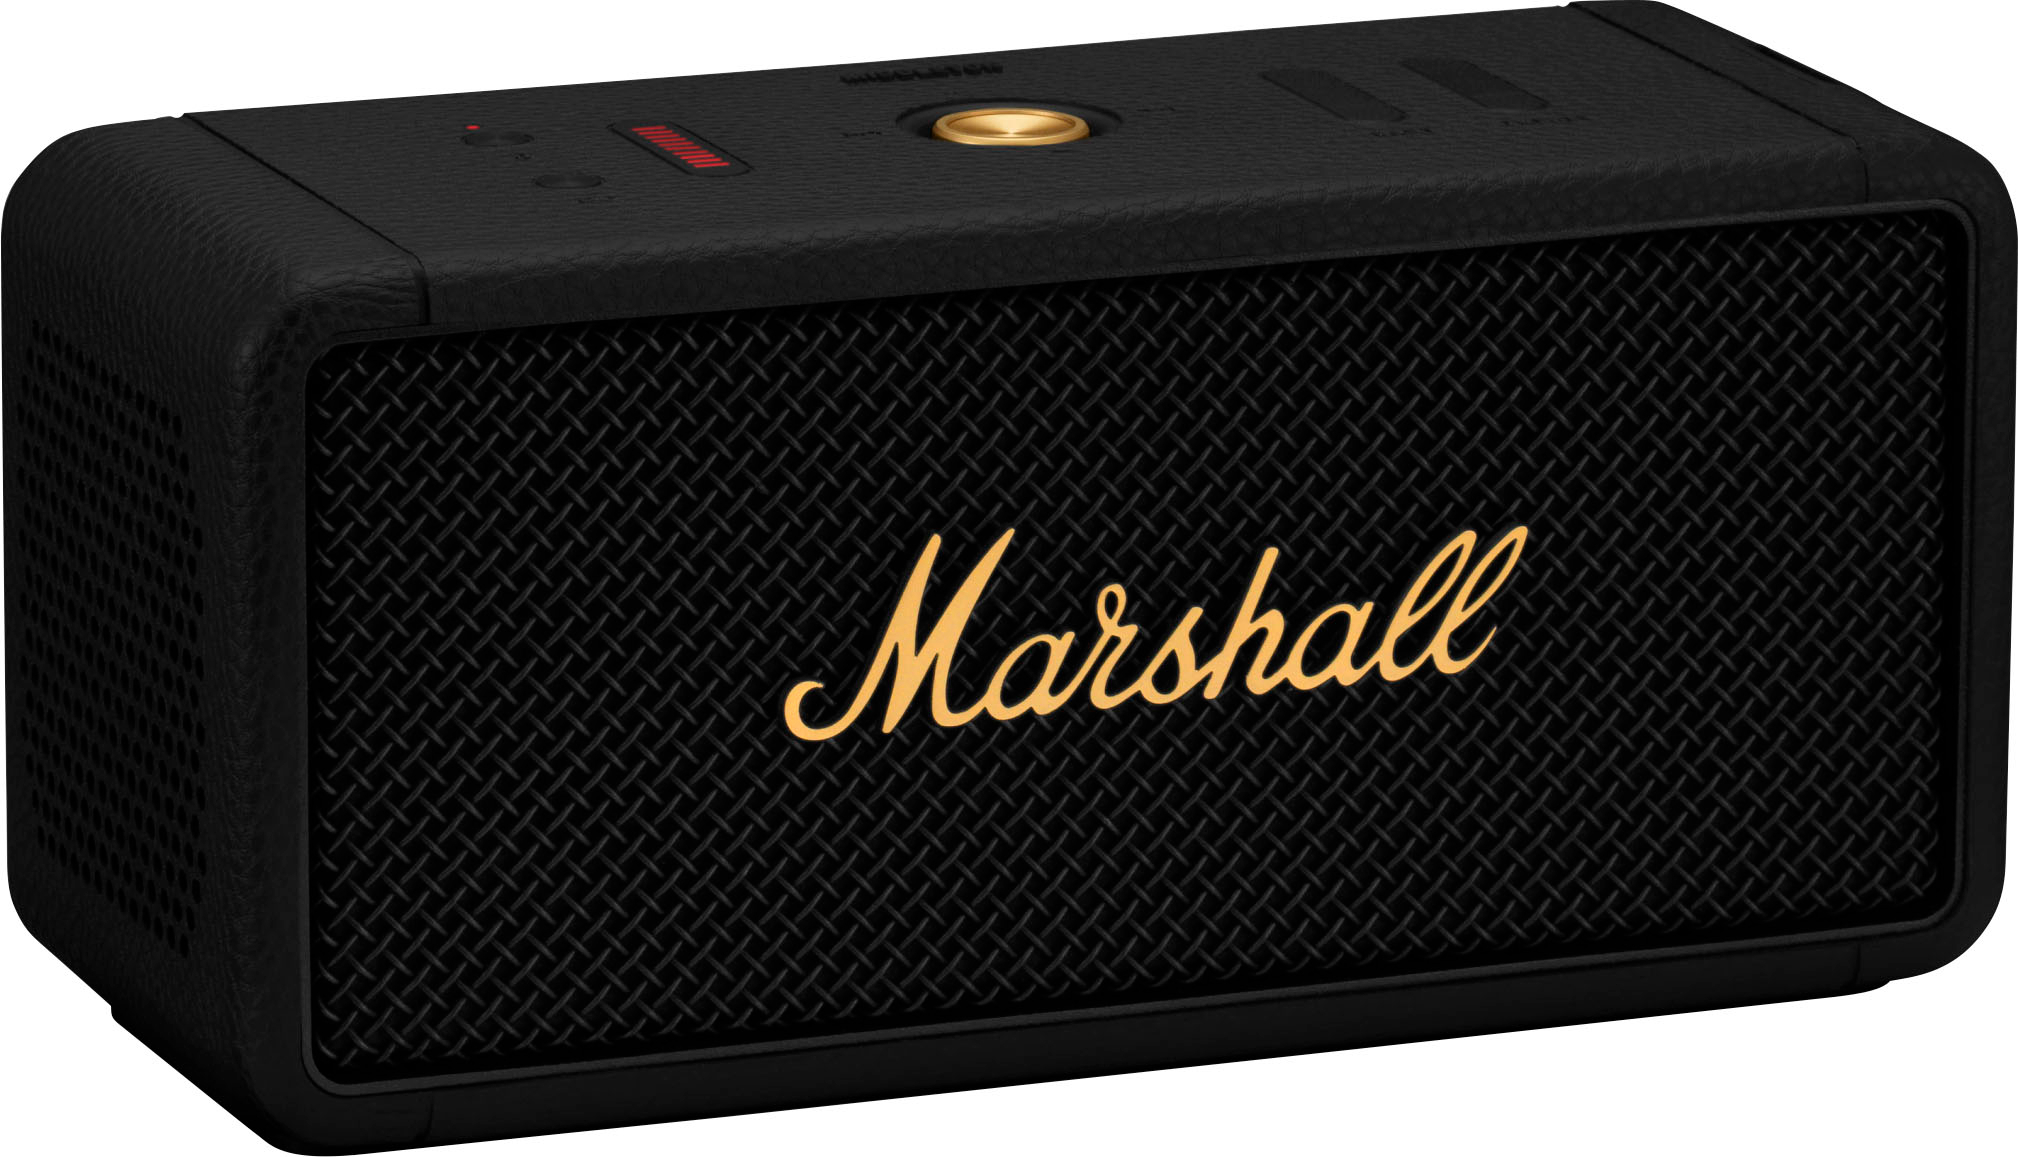 Marshall MIDDLETON BLUETOOTH PORTABLE SPEAKER Black/Brass Buy Best - 1006034